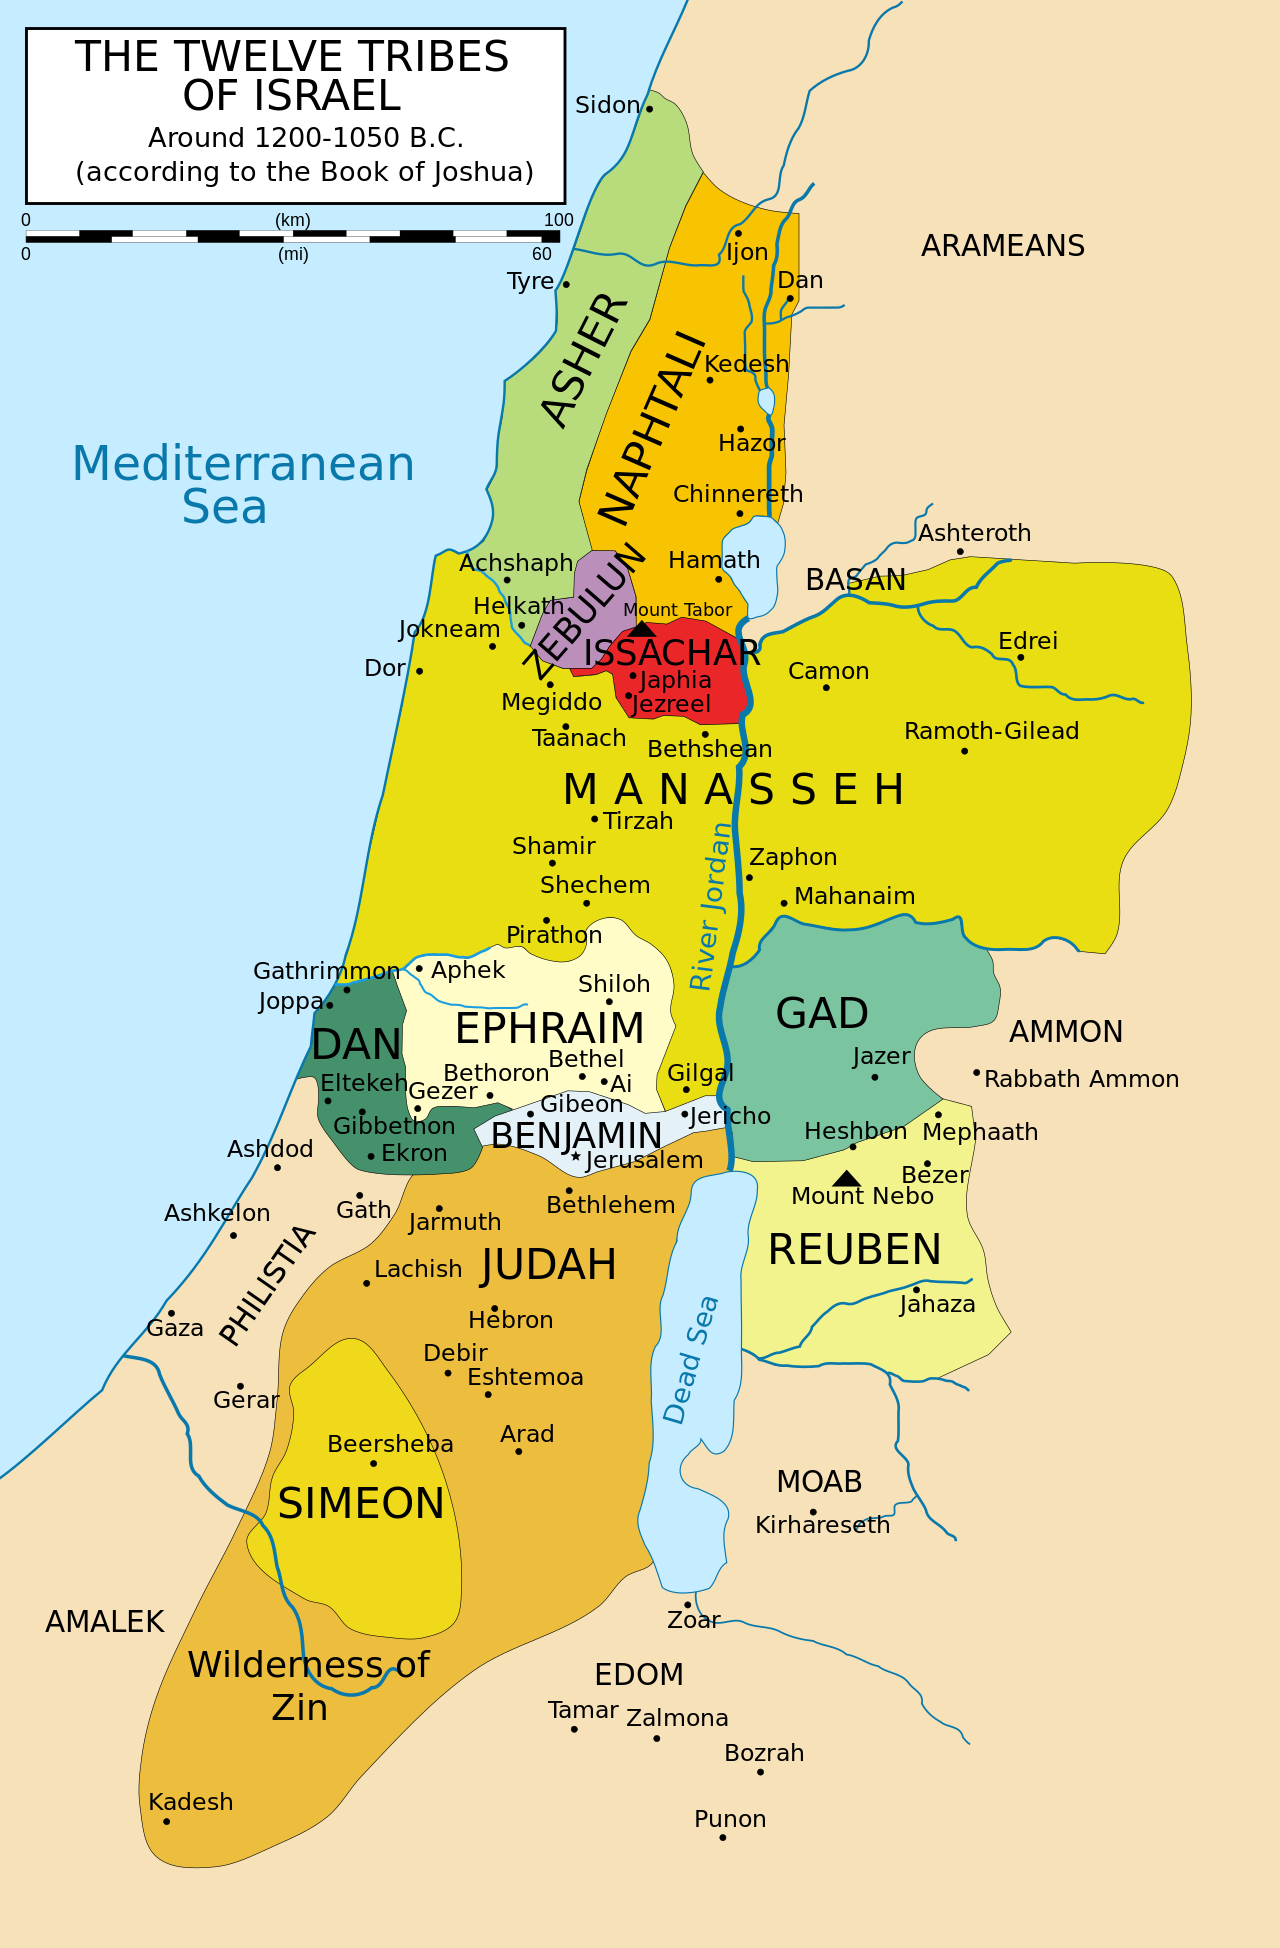 Карта двенадцати колен Израиля по Книге Иисуса Навина